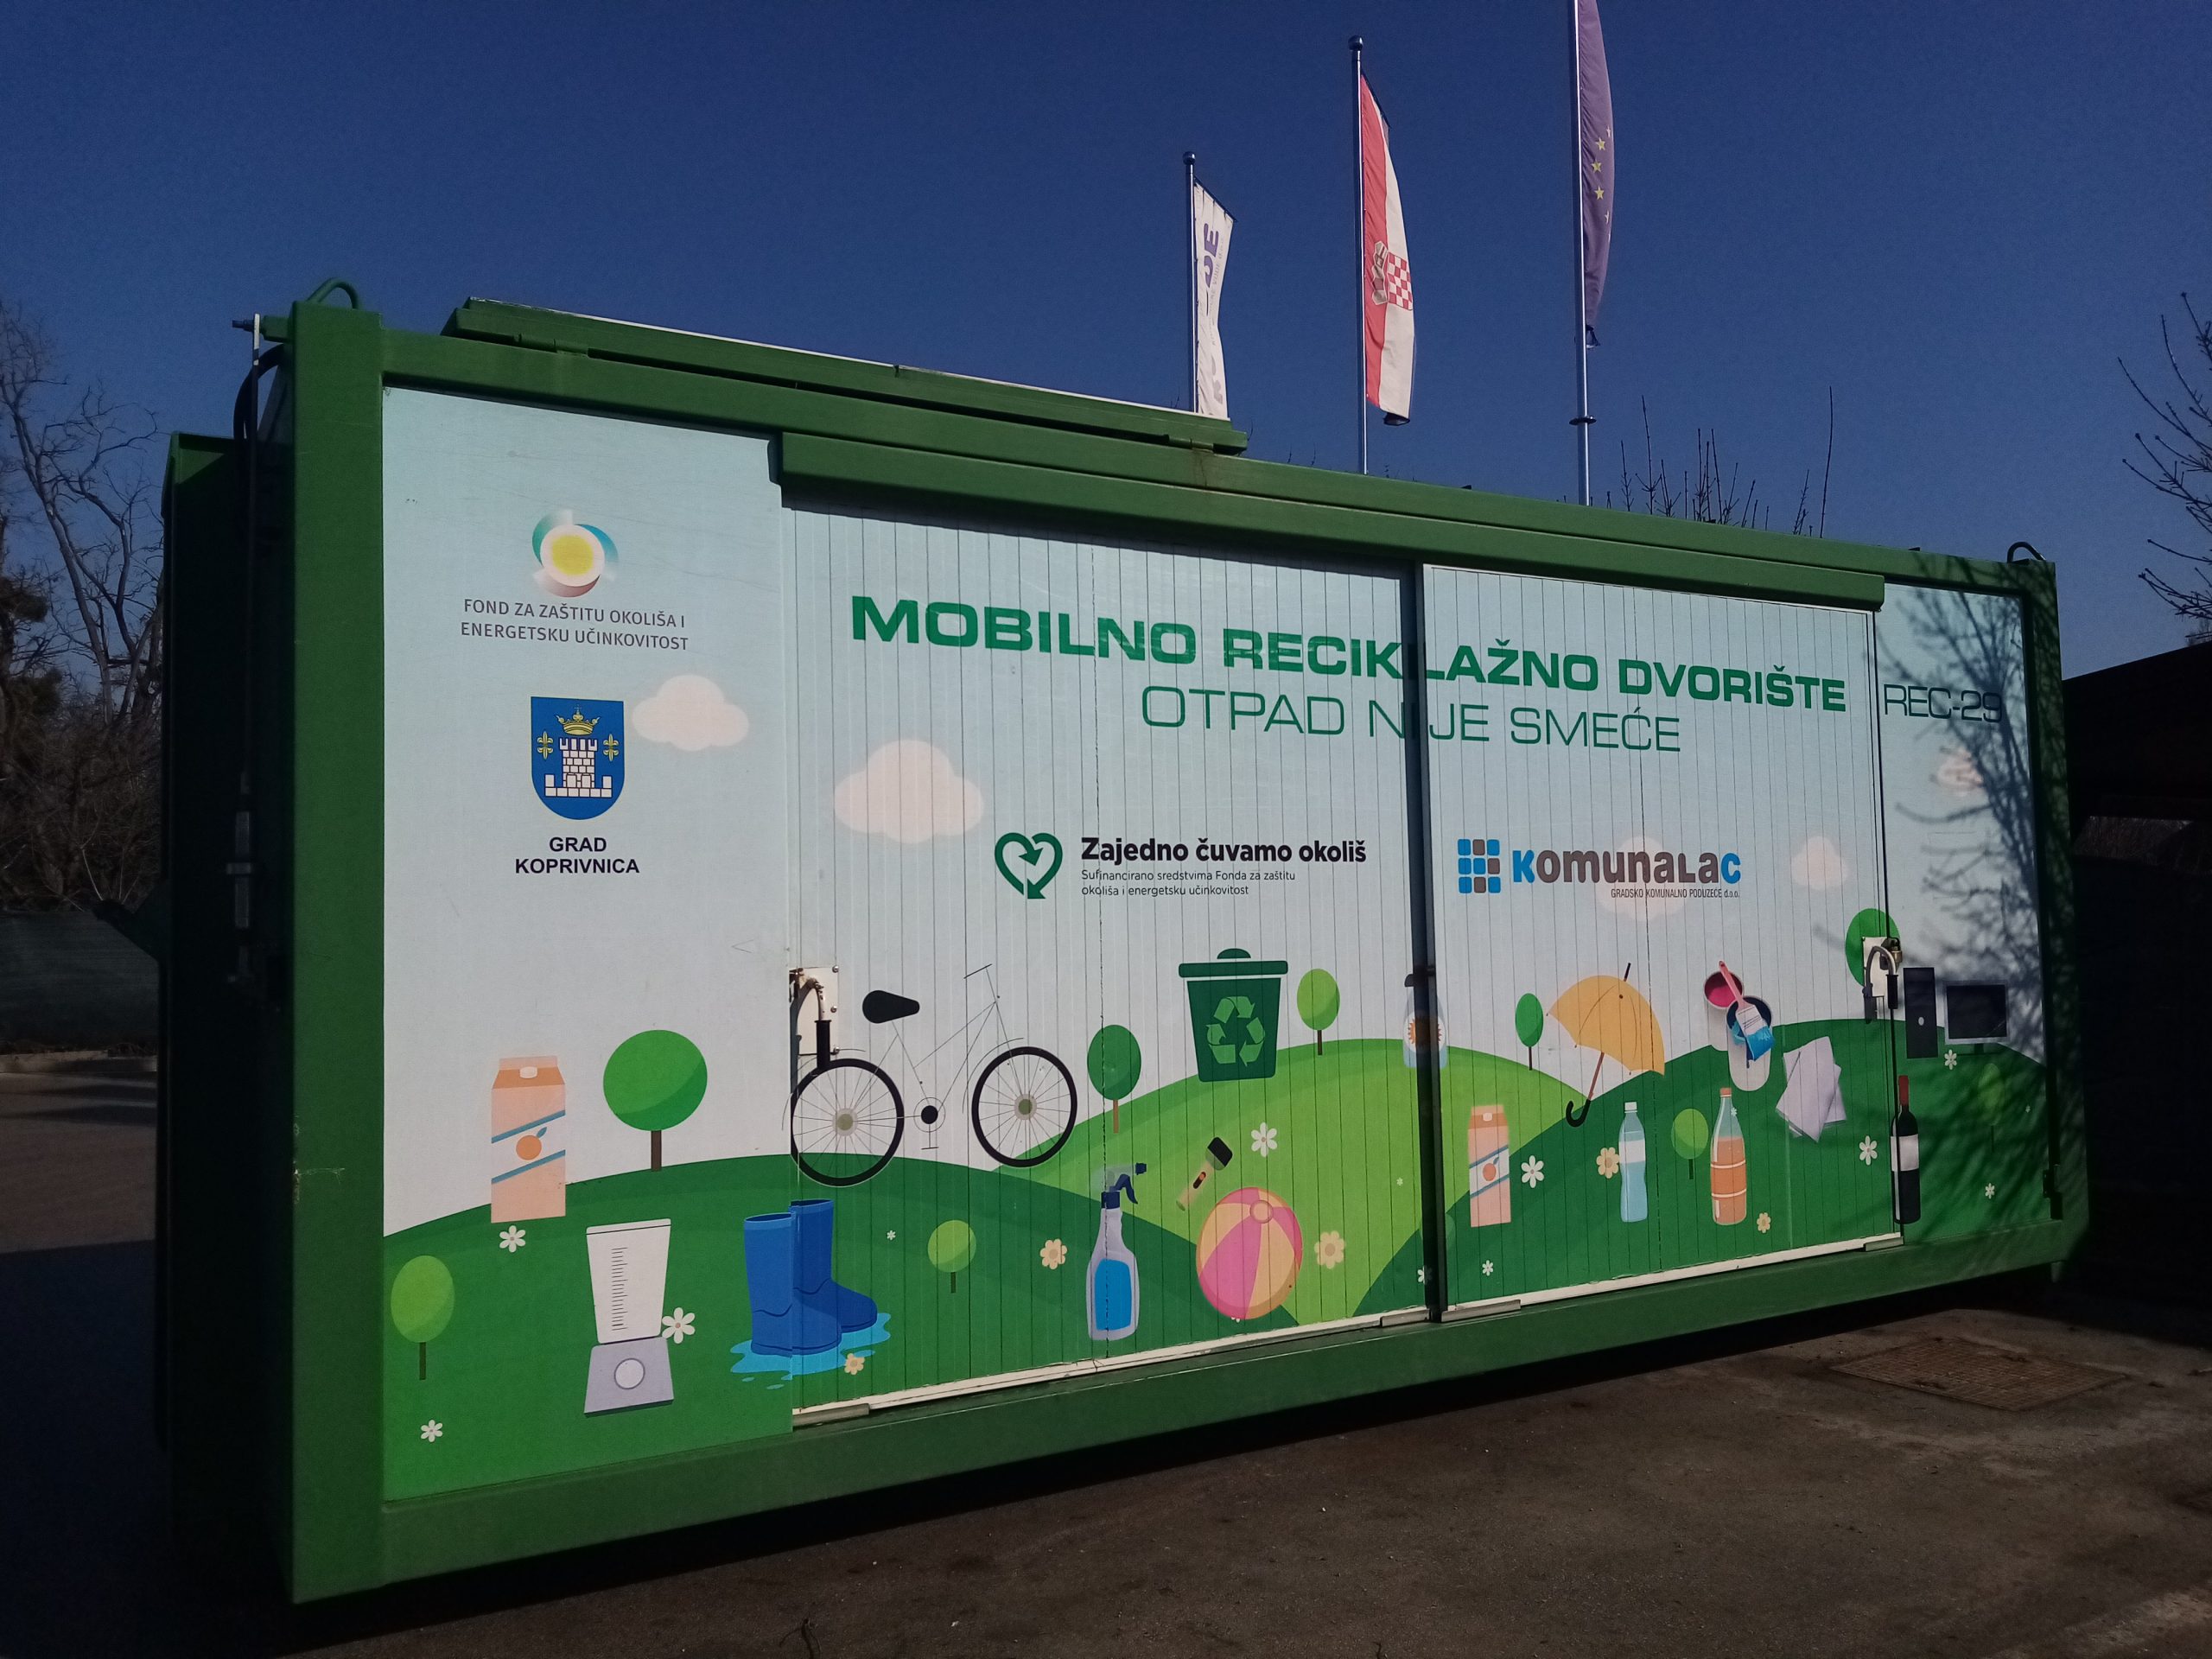 Mobilno reciklažno dvorište u utorak, 10. siječnja, nalazit će se u općini Sokolovac